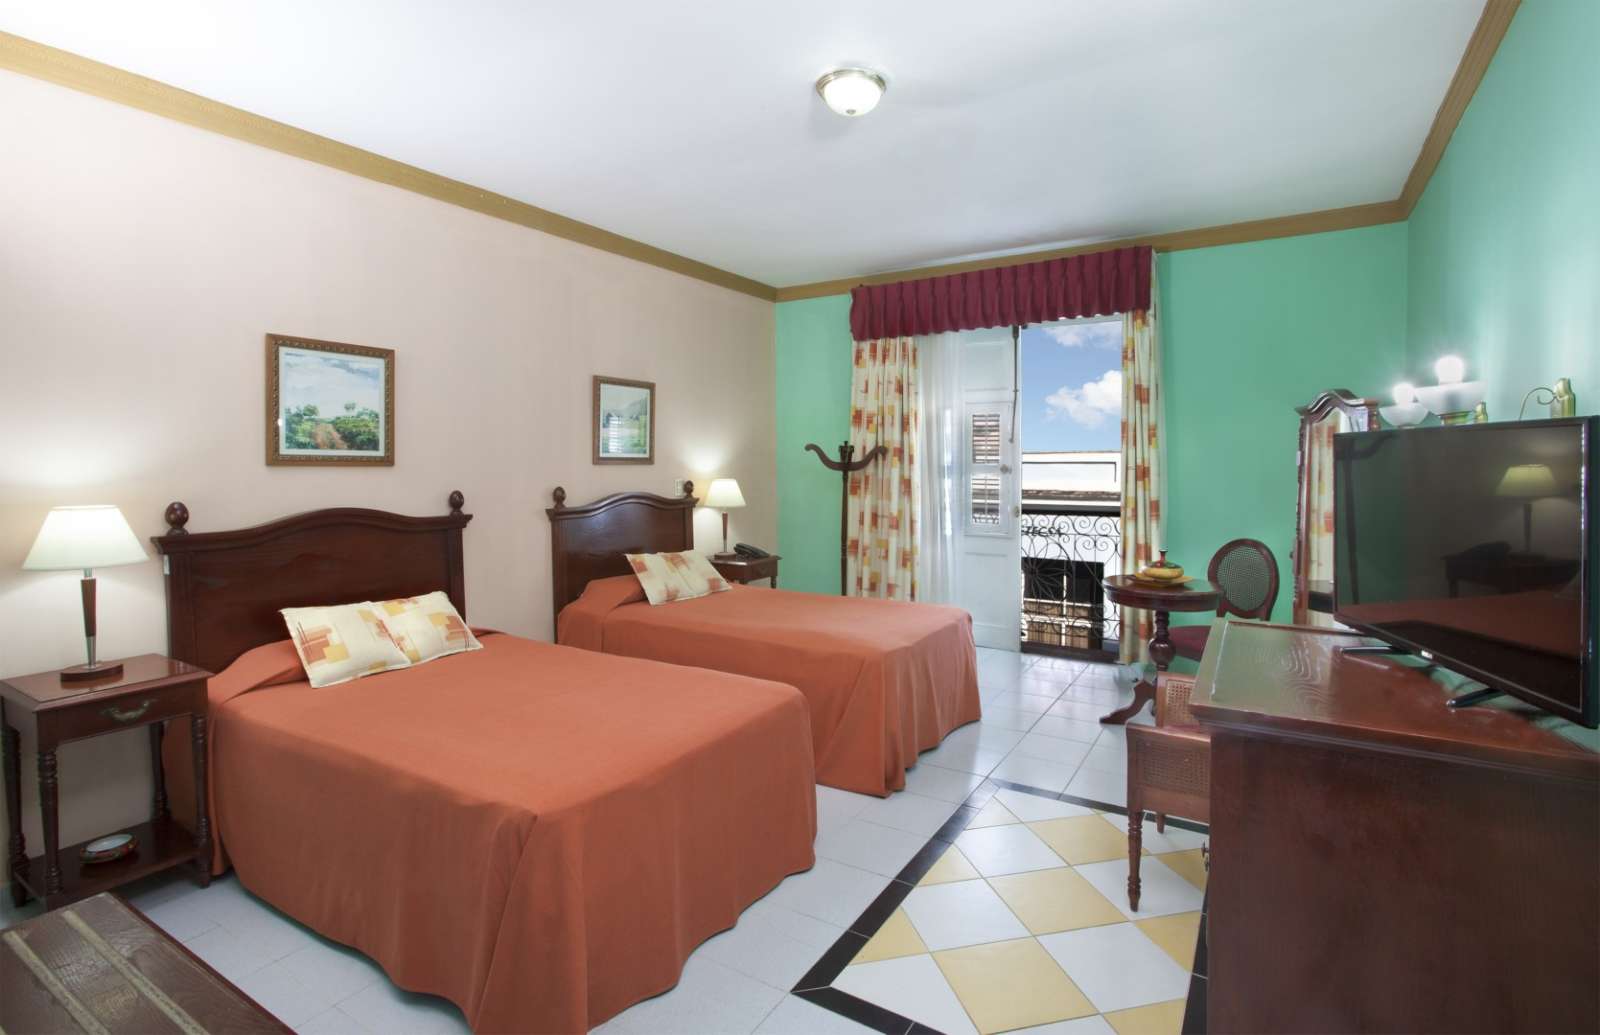 Bedroom at Melia Union hotel in Cienfuegos